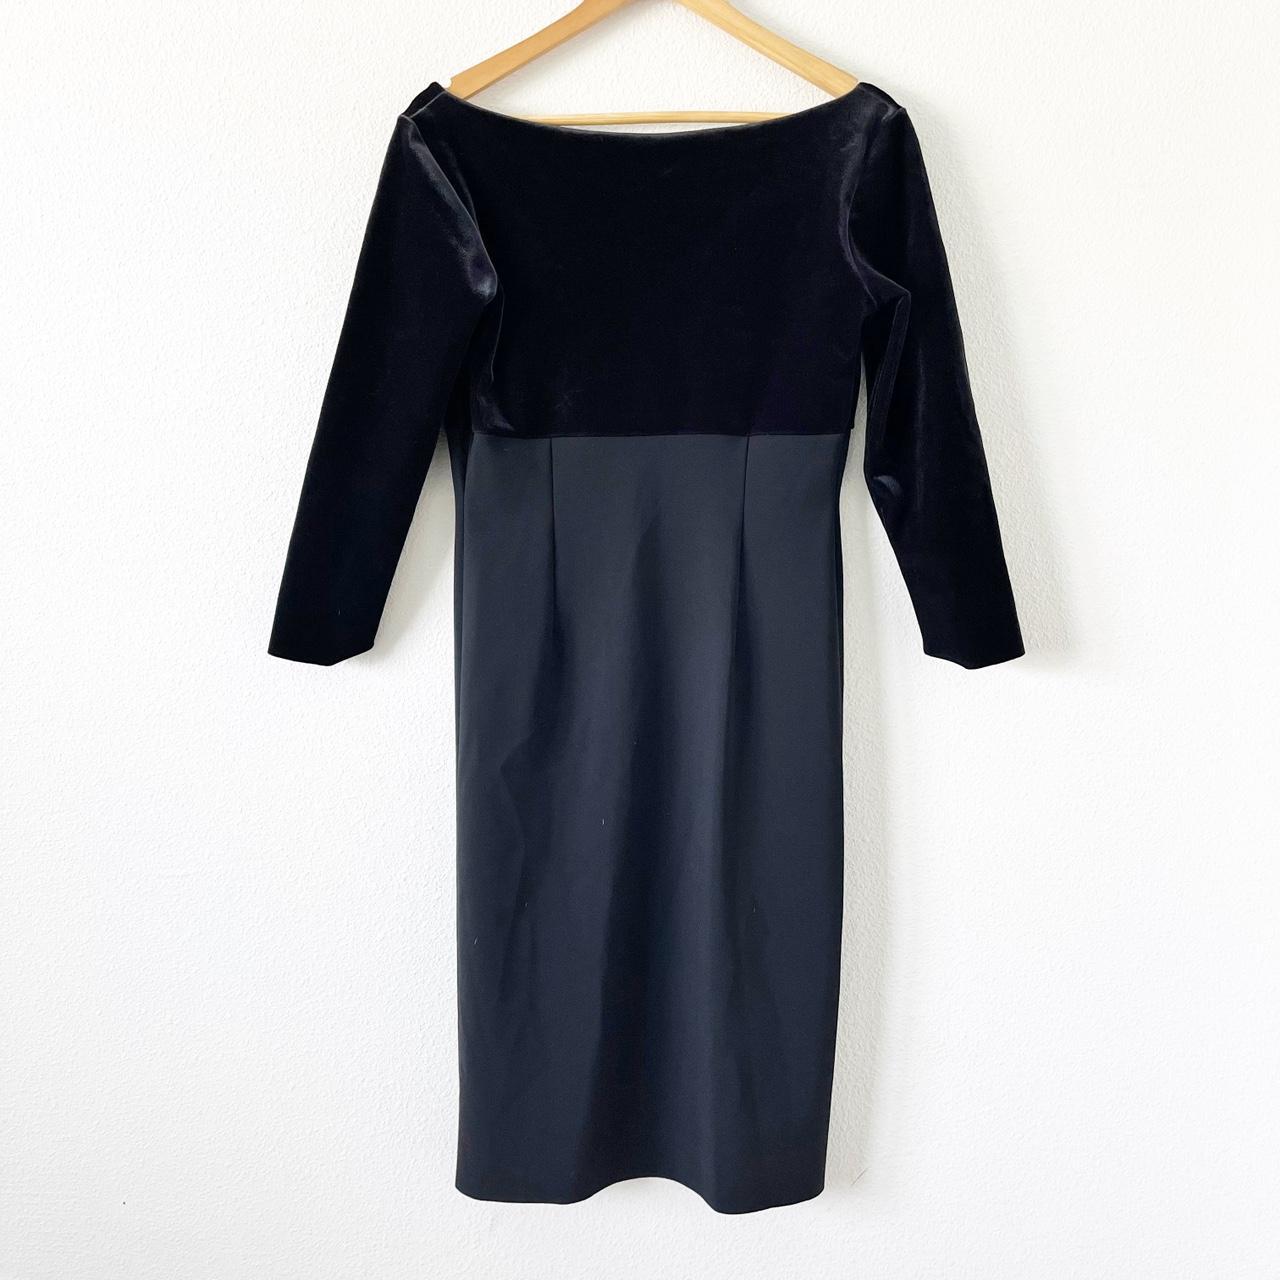 Chiara Boni La Petite Robe Women's Black Dress (8)